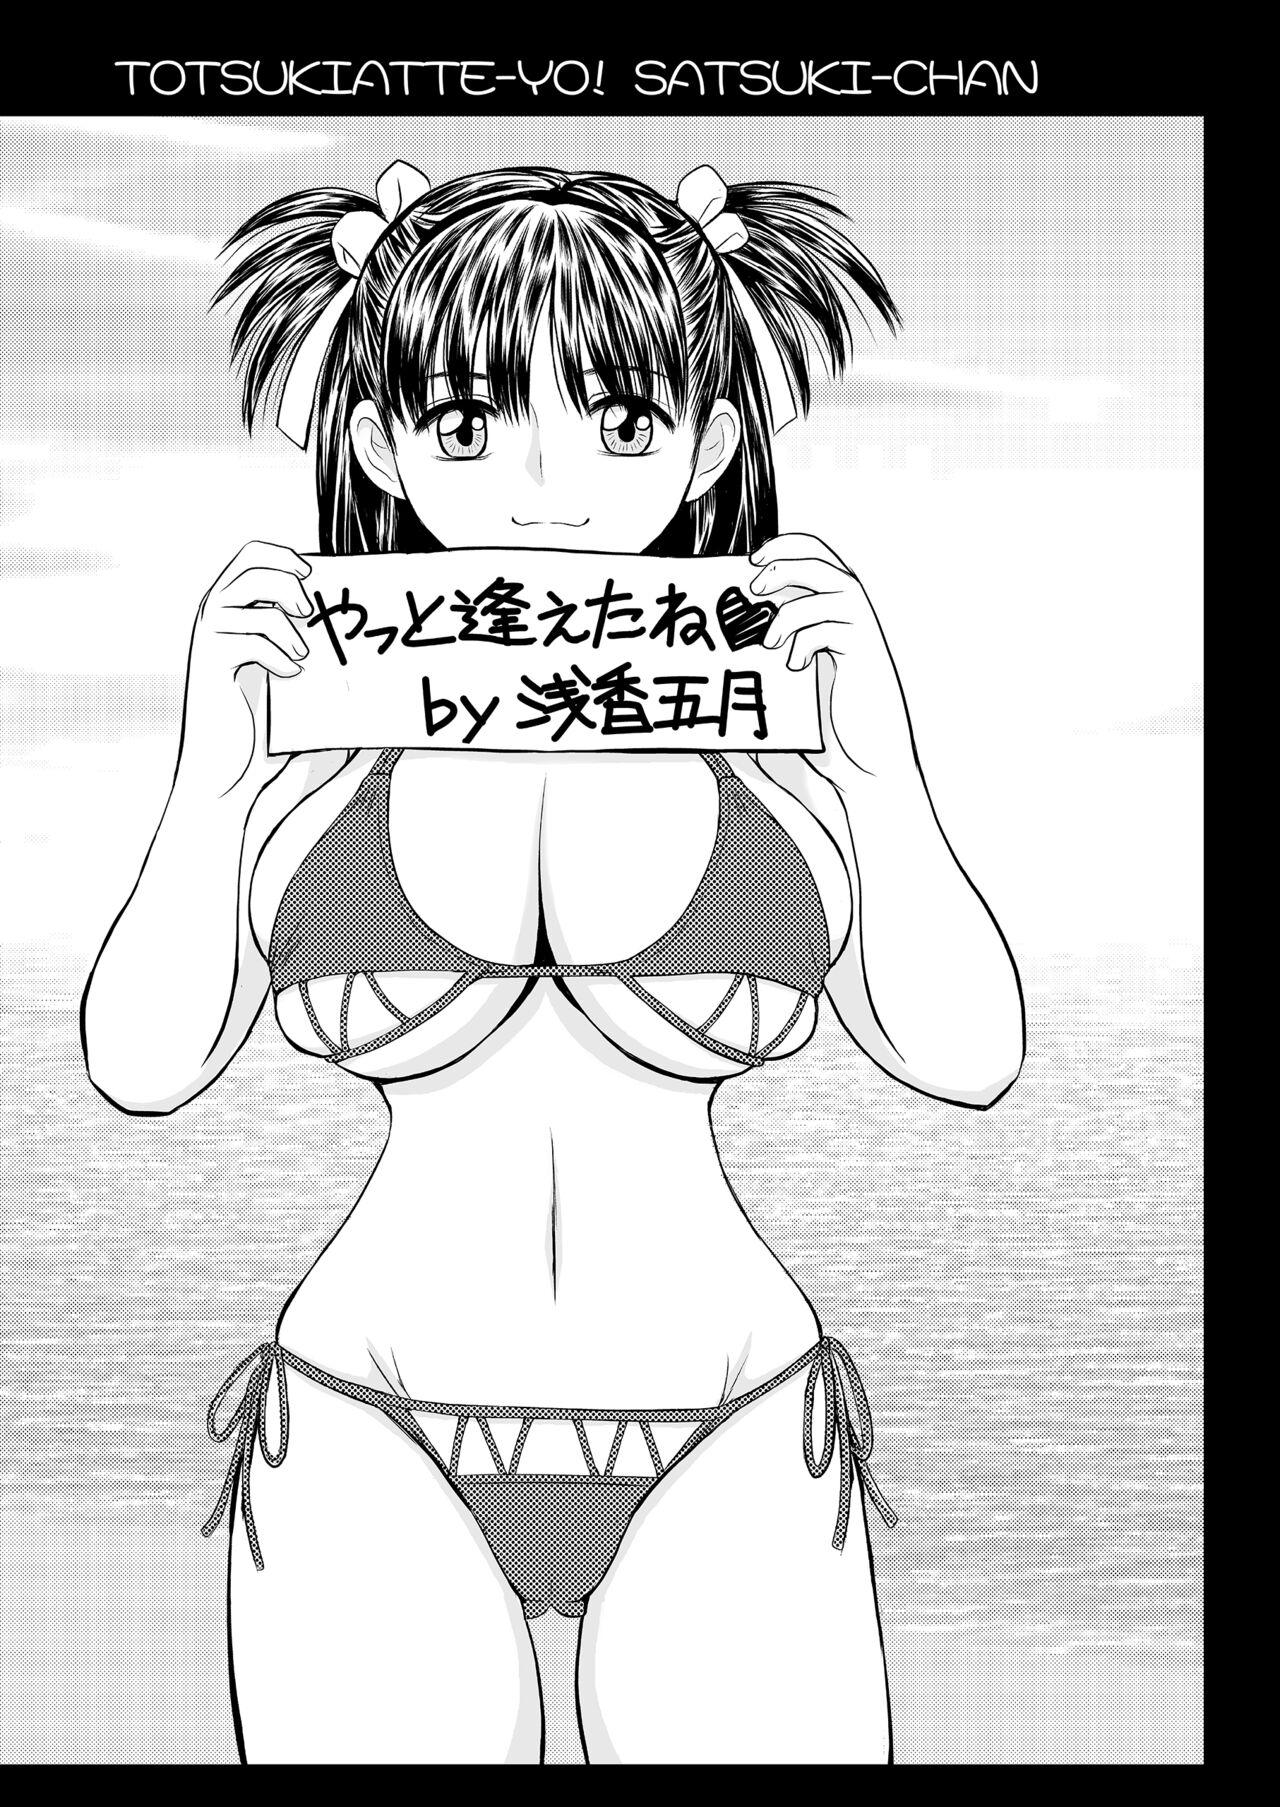 Job Tsukiatte yo! Satsuki-chan VIRGIN FLIGHT:05 - Original She - Page 3